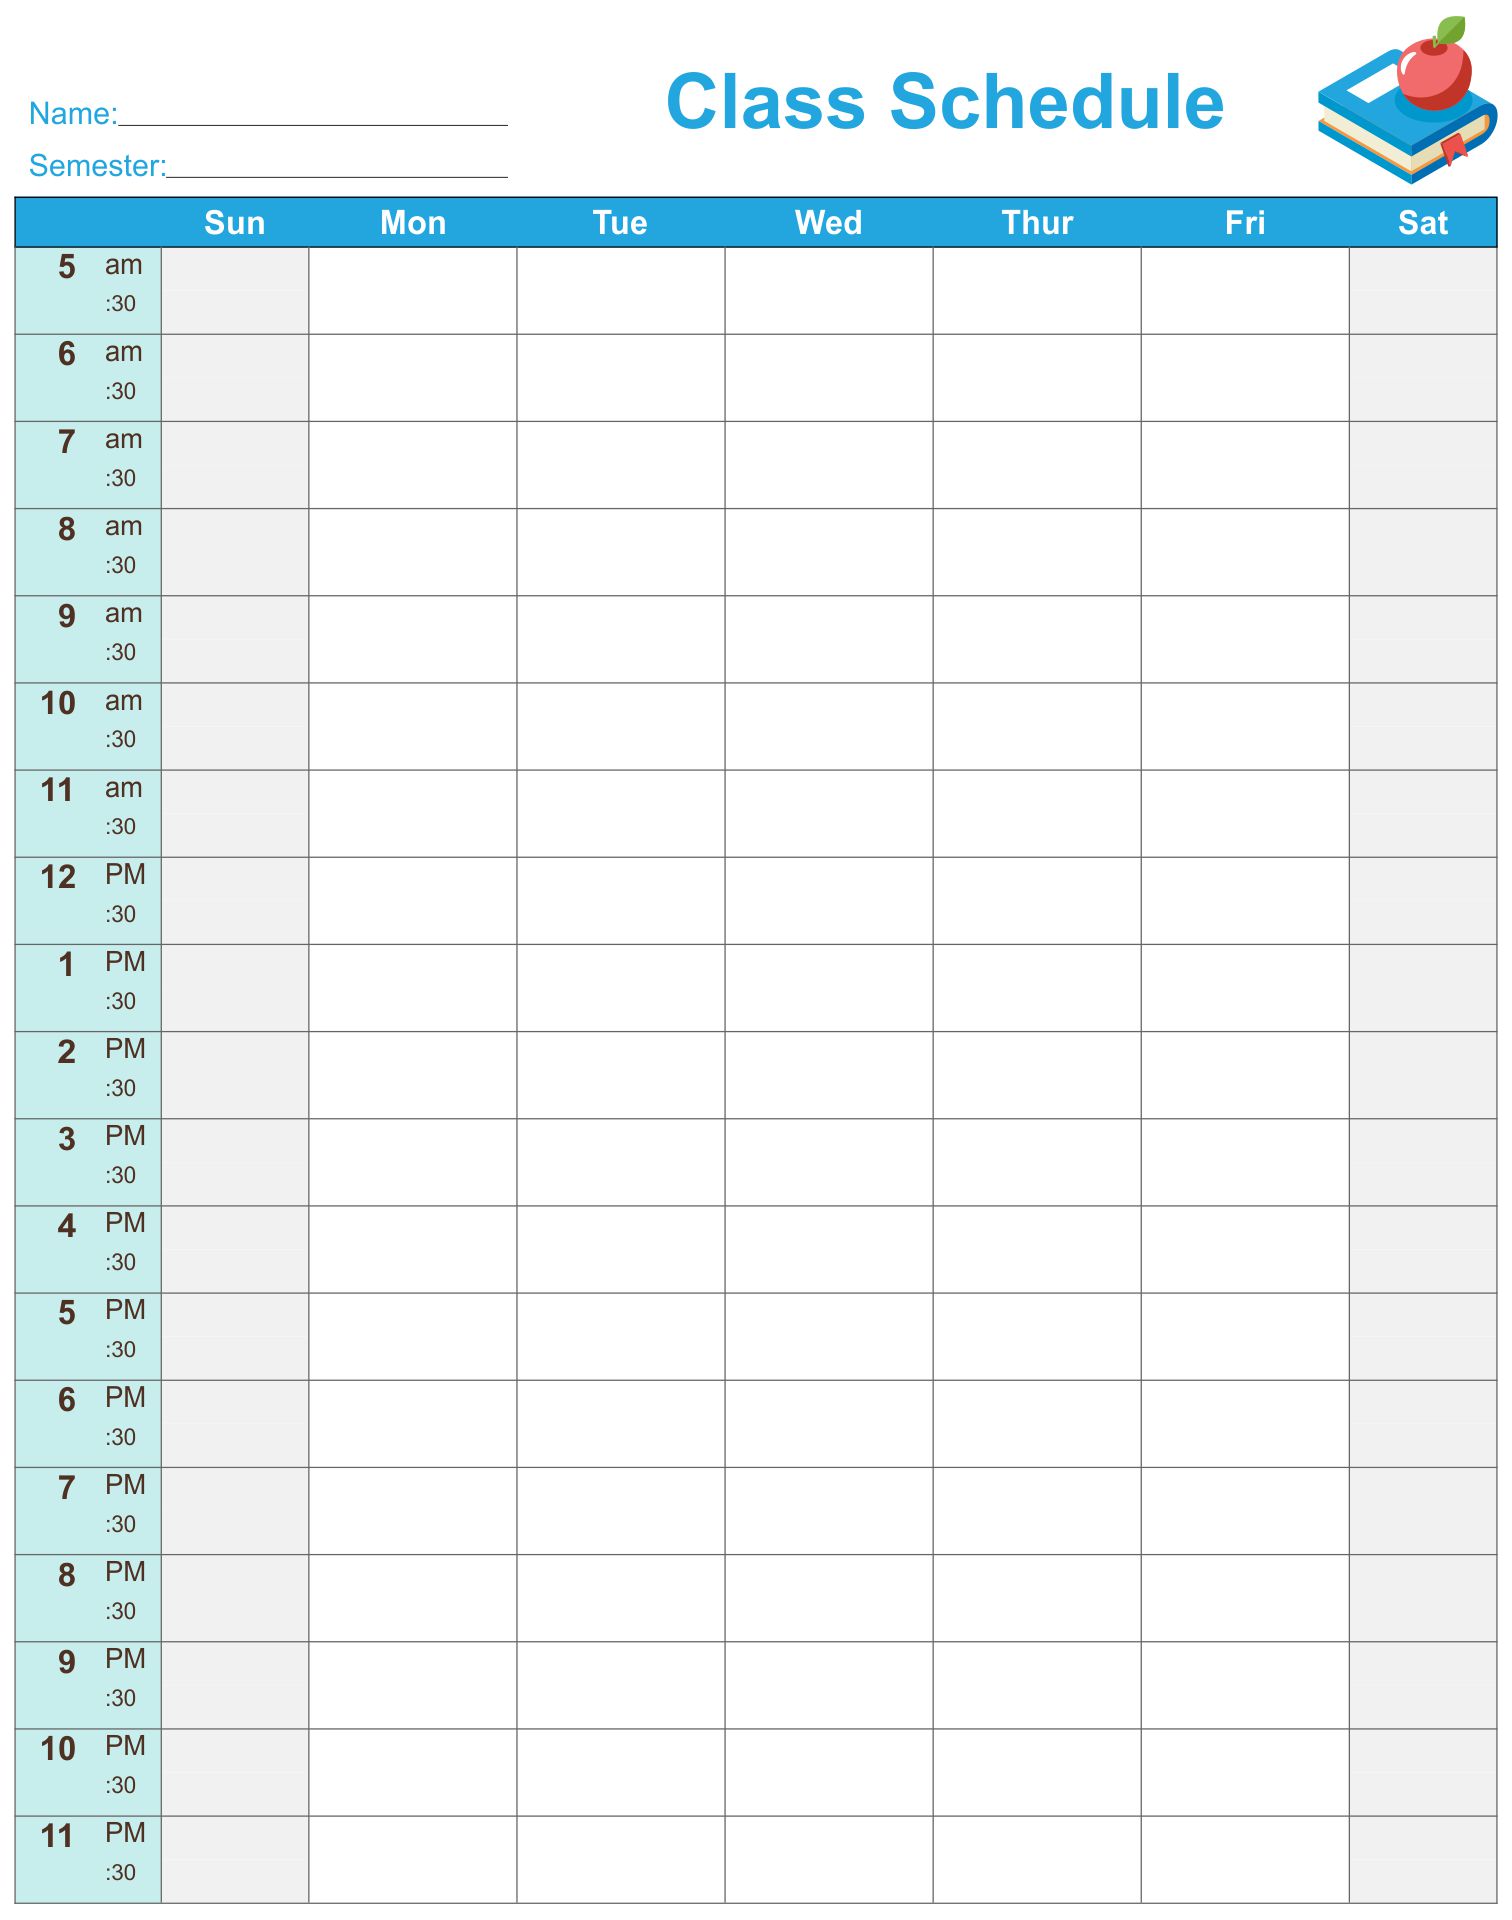 Class Schedule Maker Template